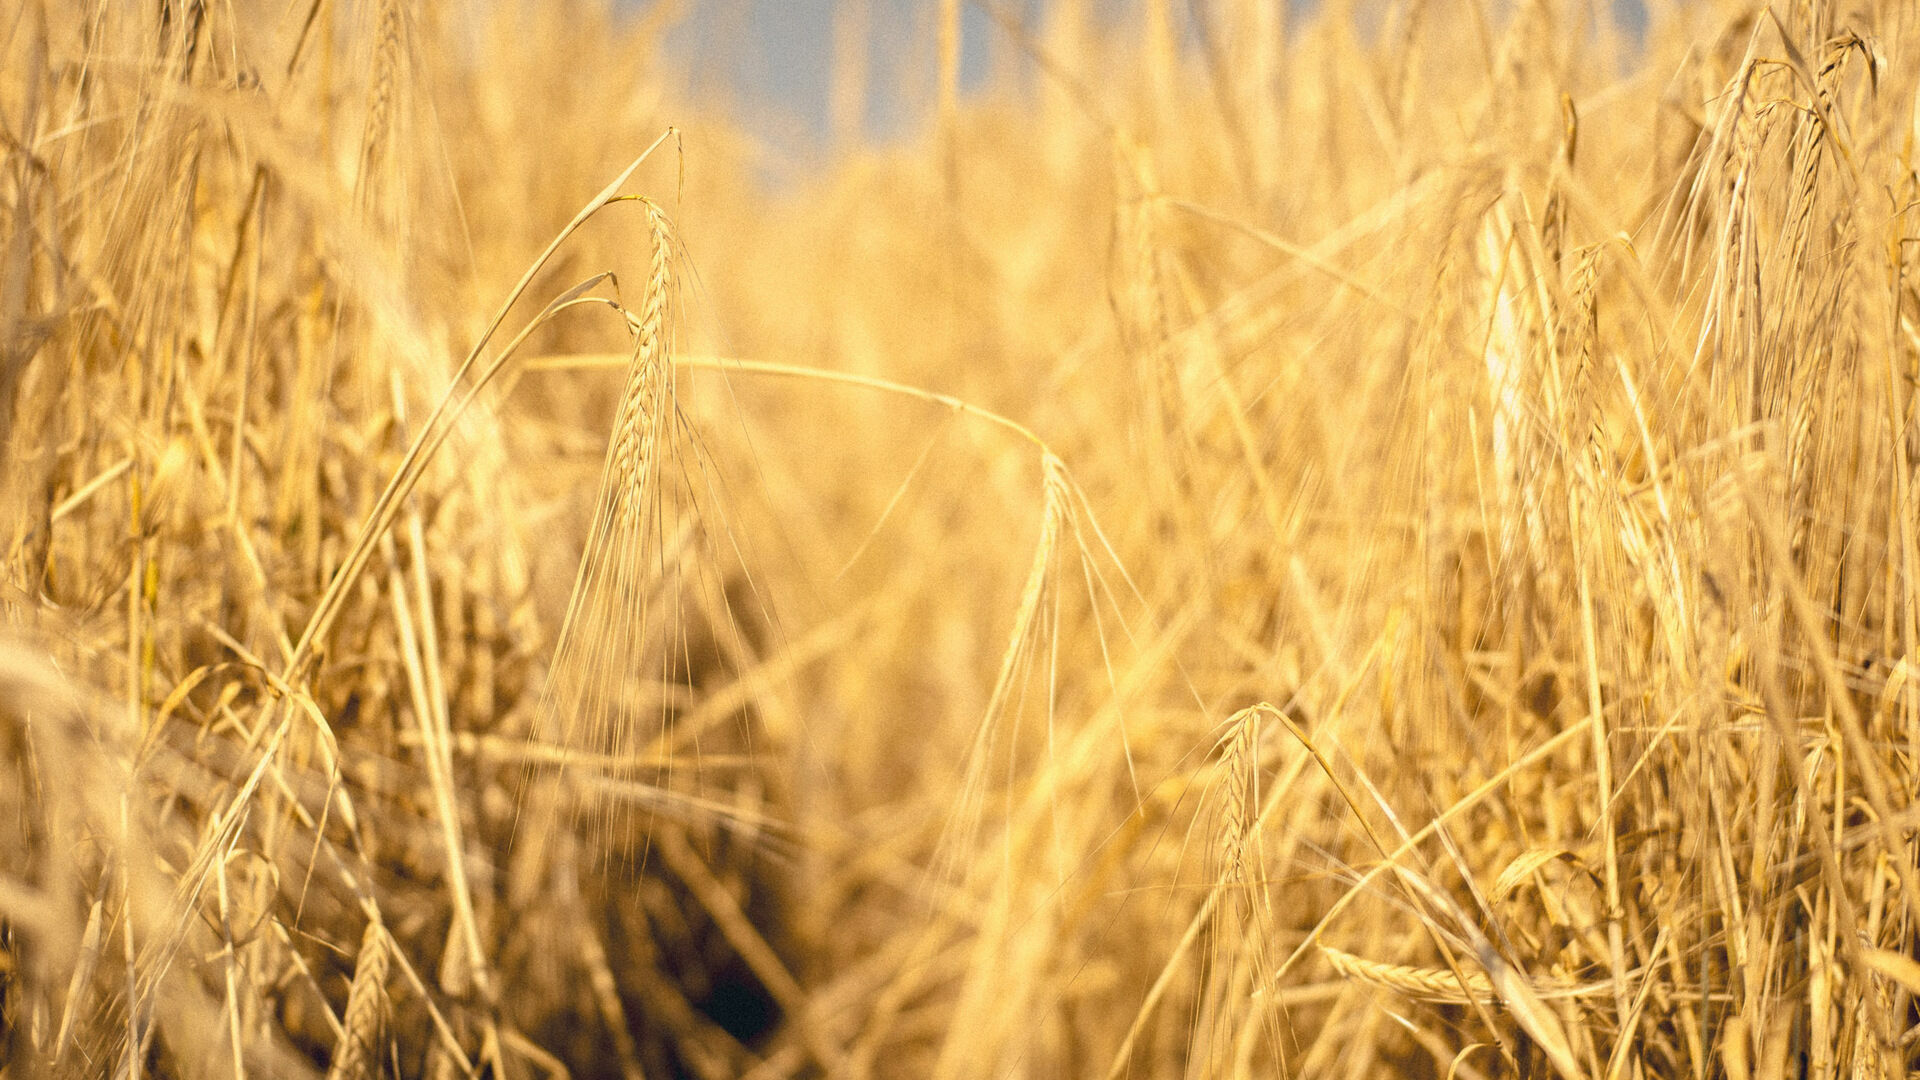 Эксперт объяснил, почему Россия установила рекорд по экспорту зерна